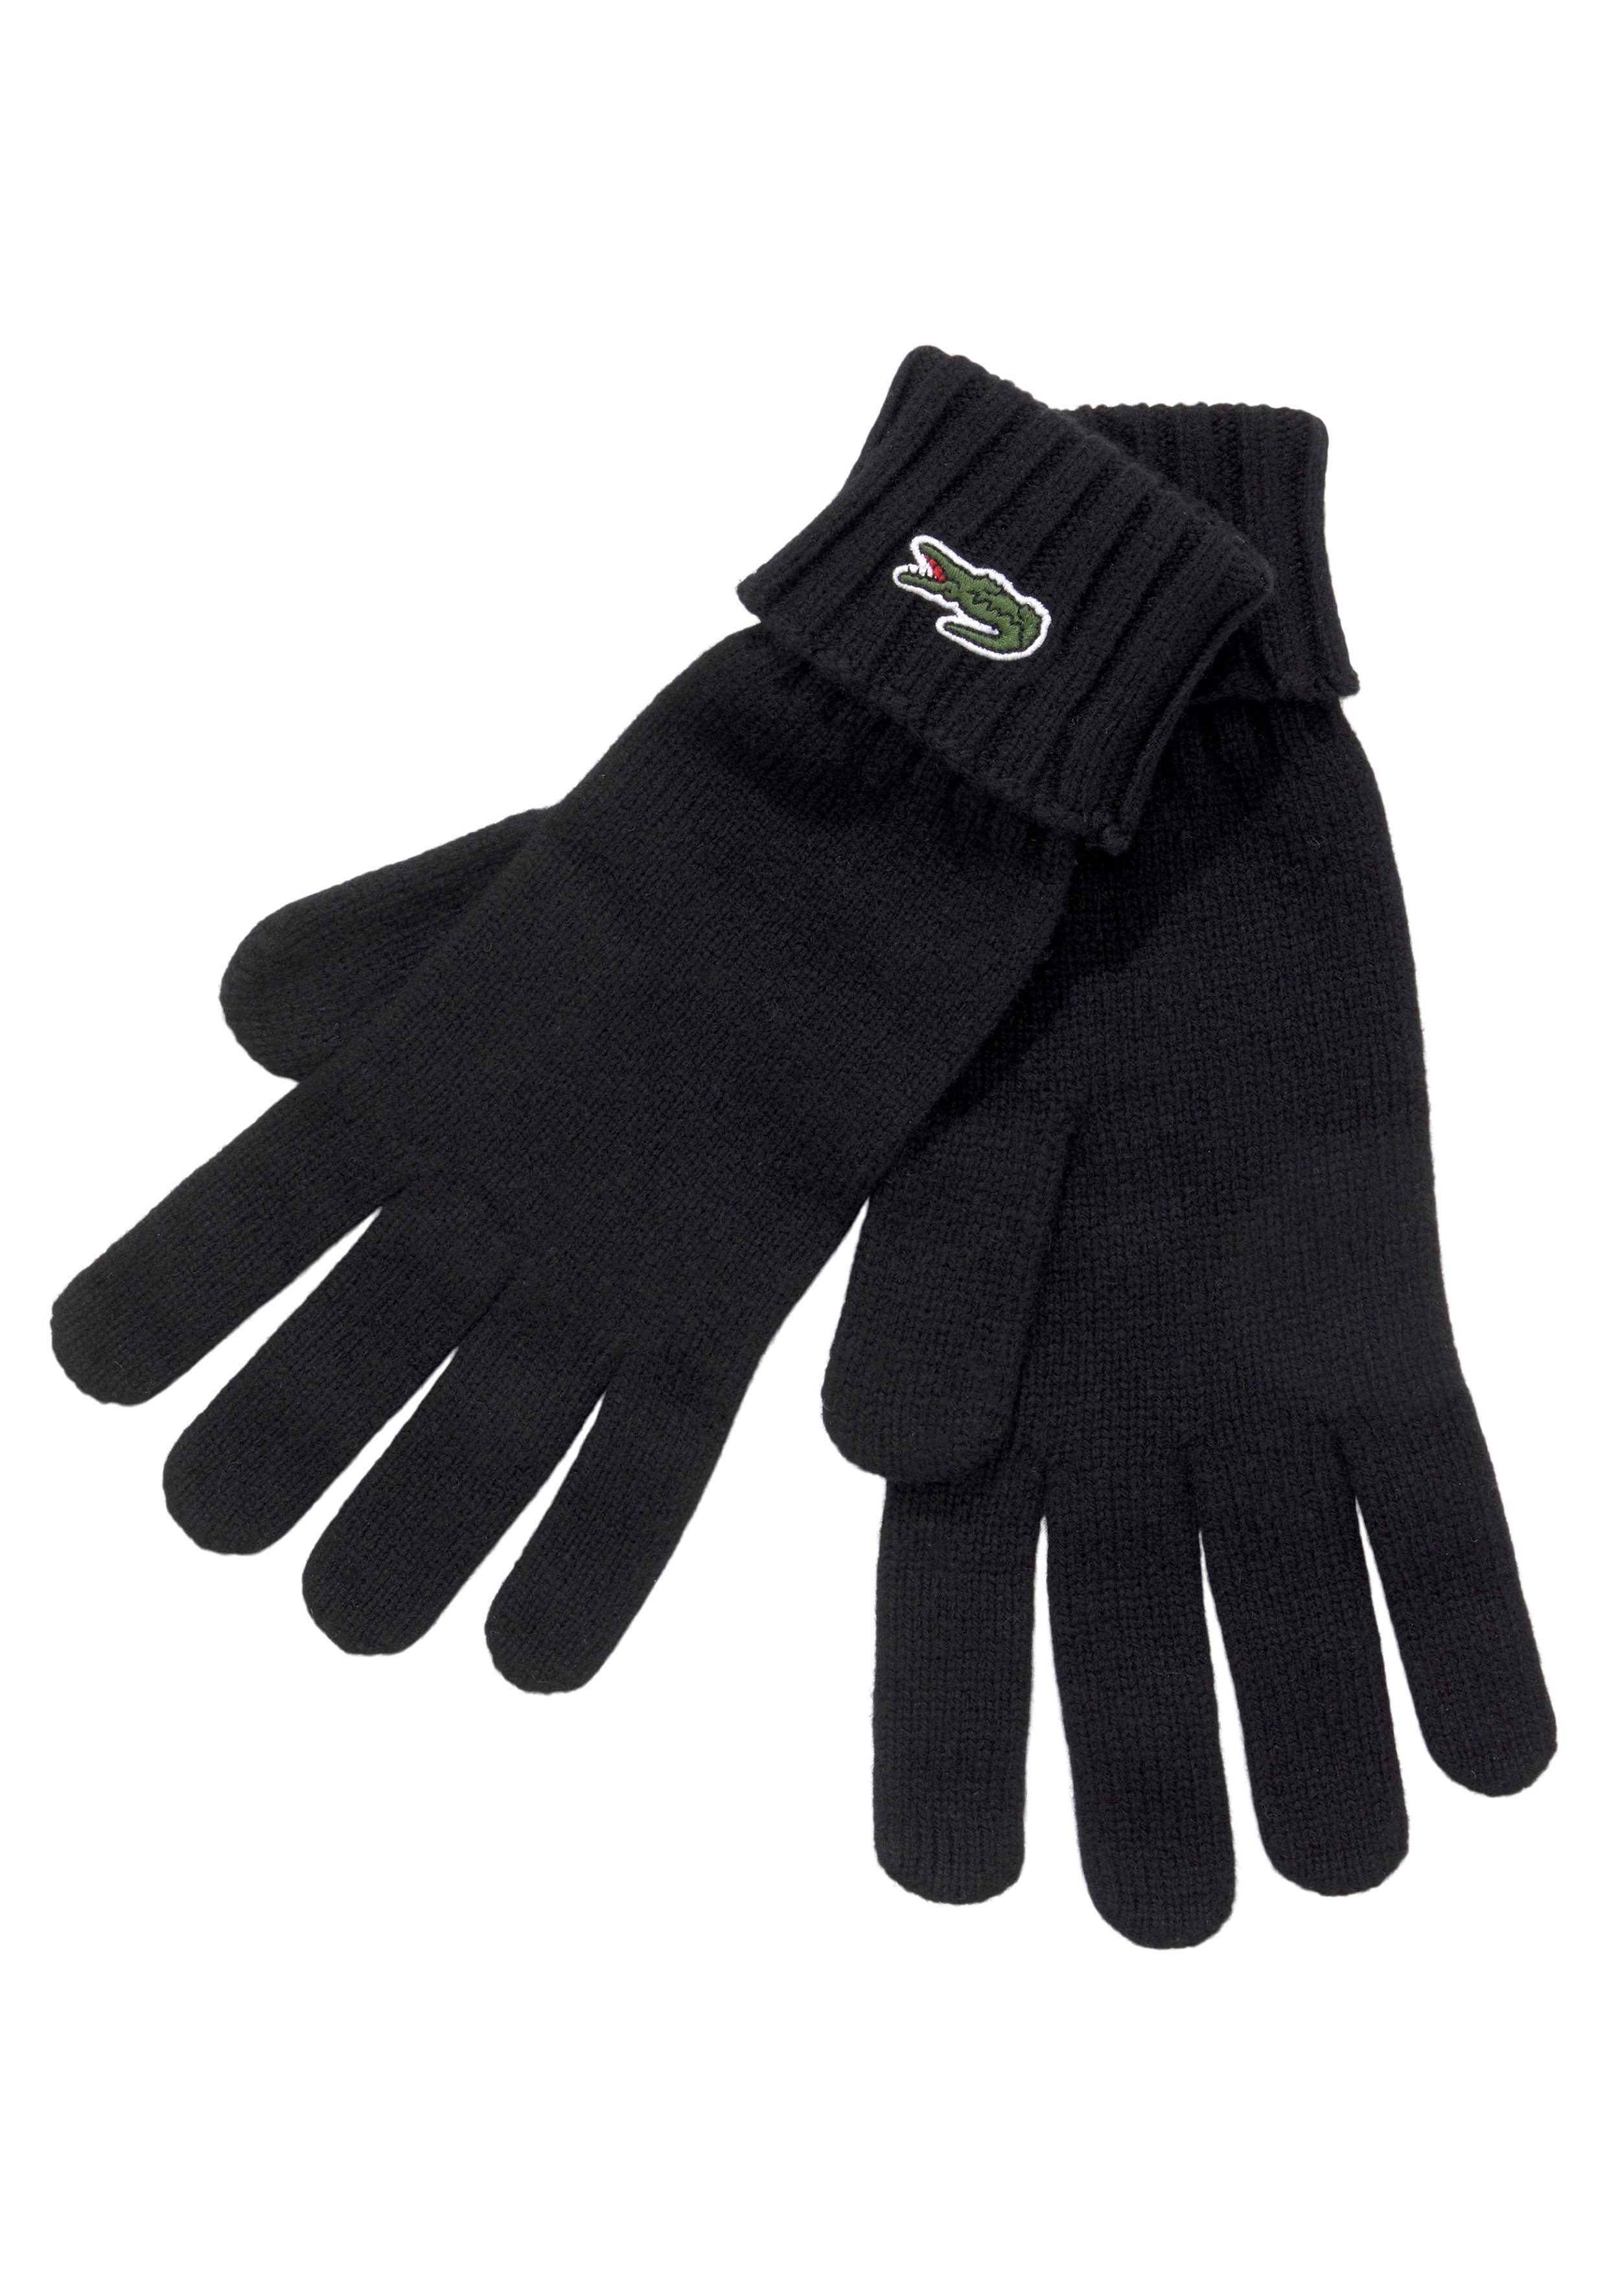 Lacoste Strickhandschuhe Unisex Gloves Bündchen Gift am Geschenk, Premium, Strickhandschuhe mit Umschlag Logo, Warm